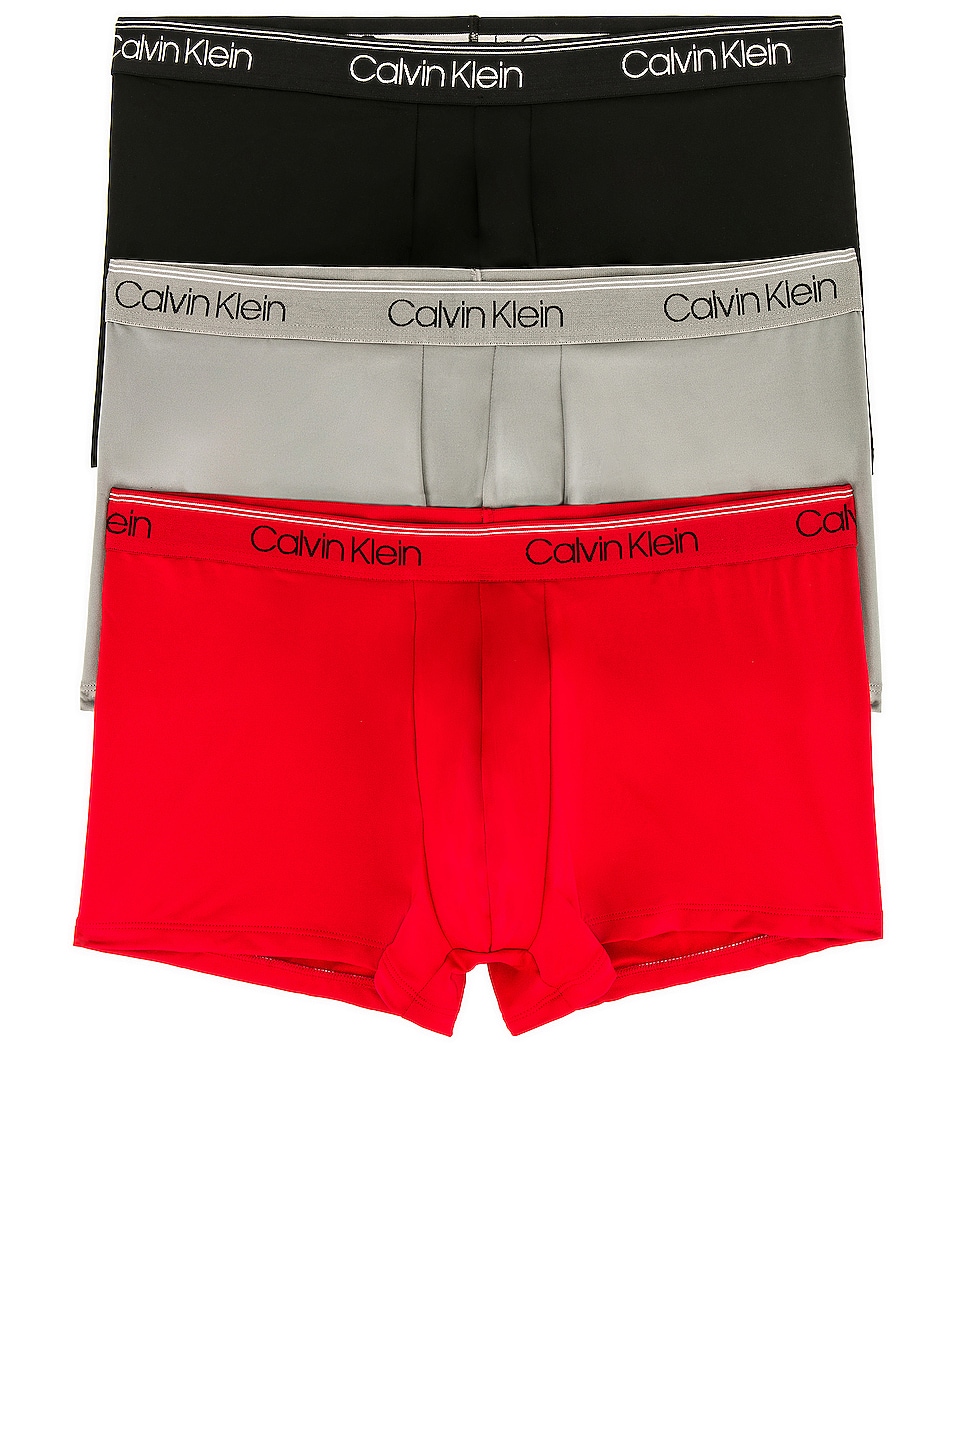 Calvin Klein Underwear Calvin Klein Low Rise Trunk 3 Piece Set in Black,  Convoy, & Red Gala | REVOLVE